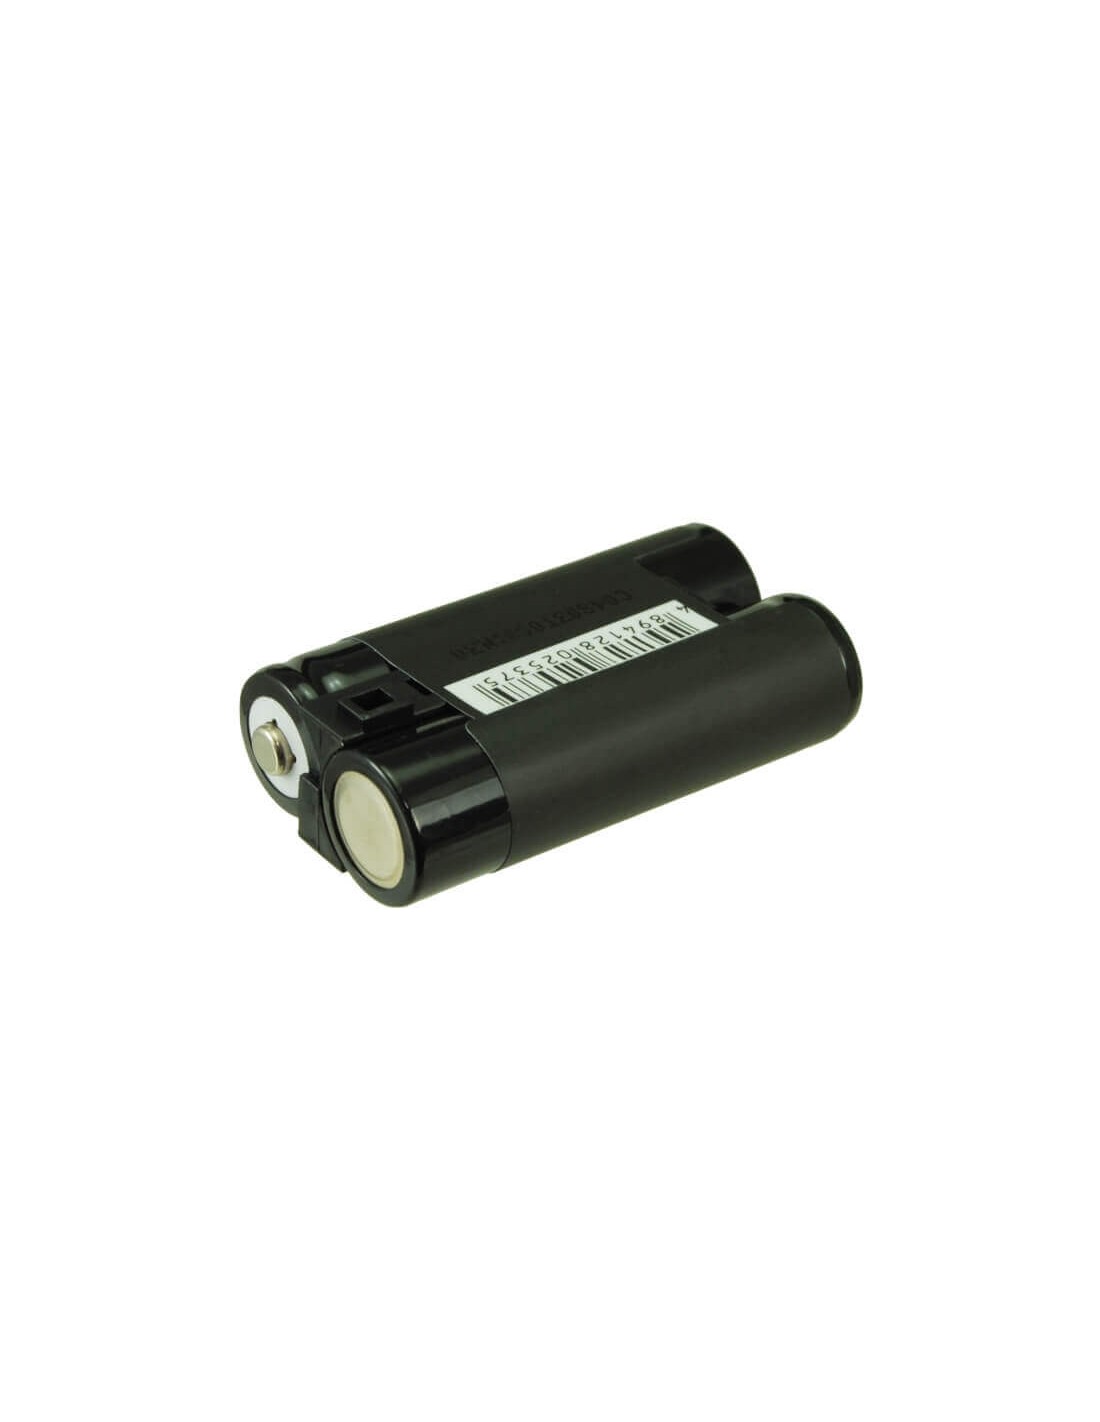 Battery for Kodak Easyshare C1013, Easyshare C300, 2.4V, 1800mAh - 4.32Wh